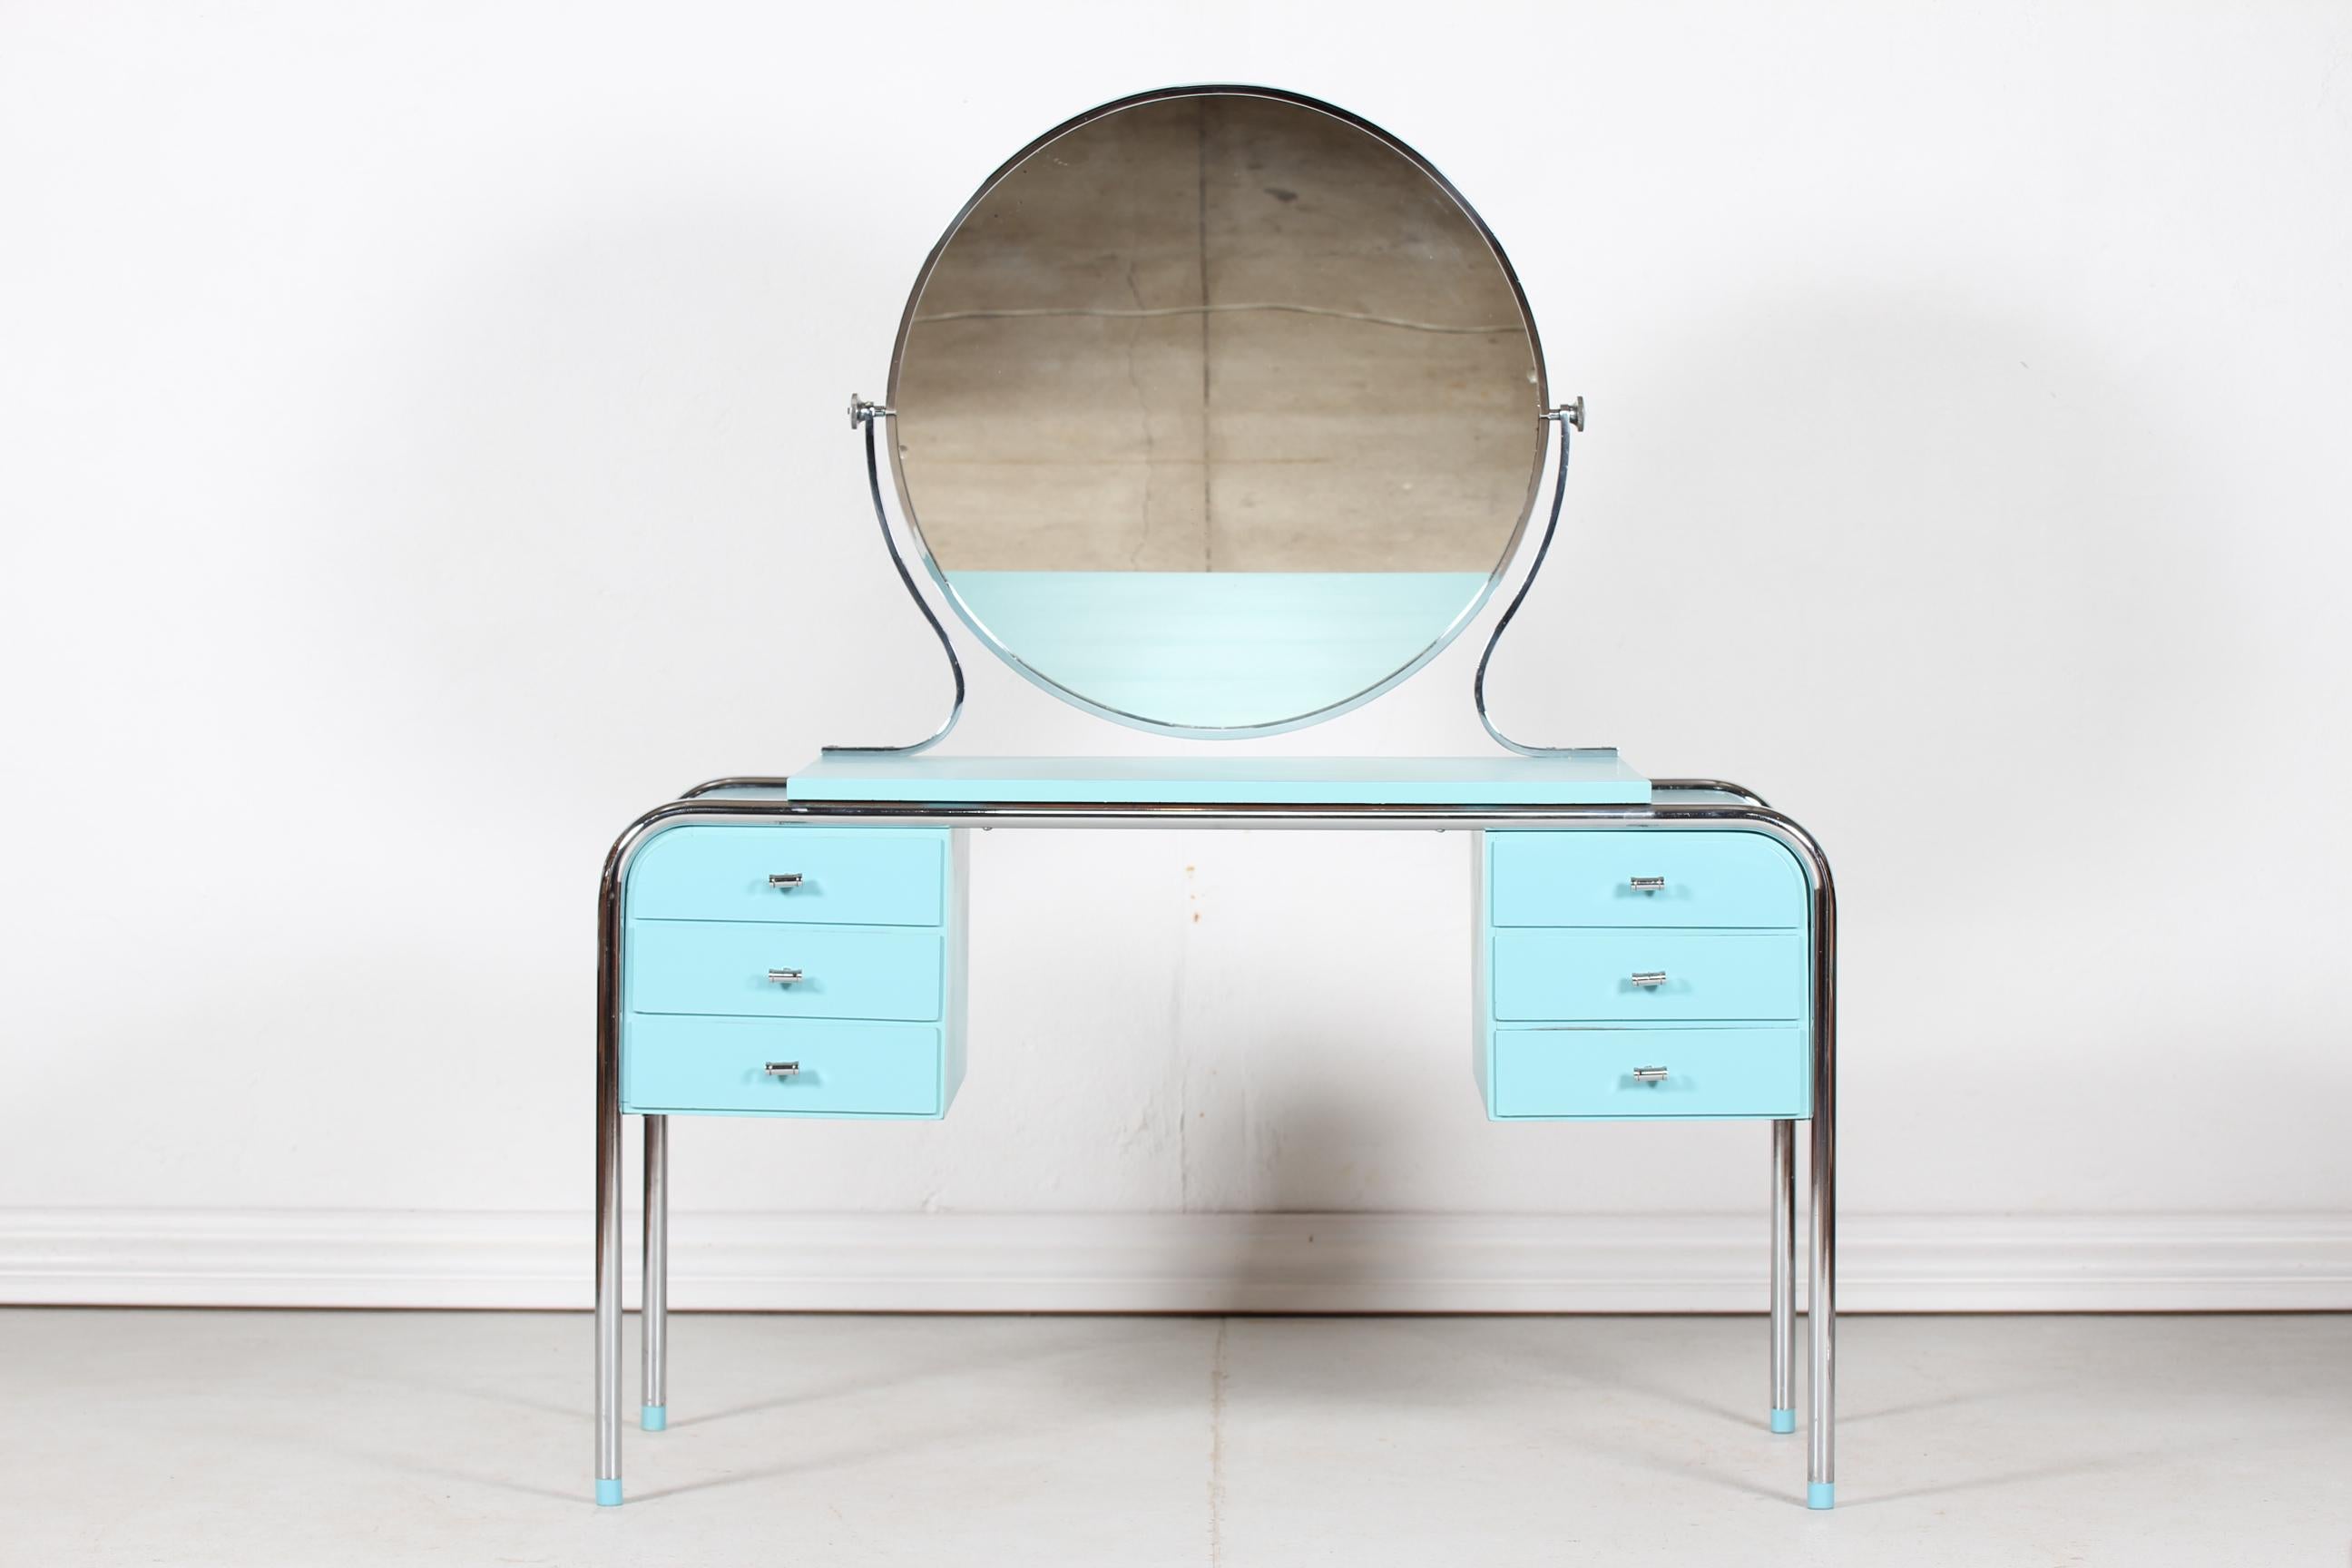 Coiffeuse Art Déco danoise avec 6 tiroirs, miroir rond inclinable et une chaise assortie fabriquée par un ébéniste danois dans les années 1930.
Le cadre de la table, du miroir et de la chaise est en métal chromé, les parties en bois sont peintes en